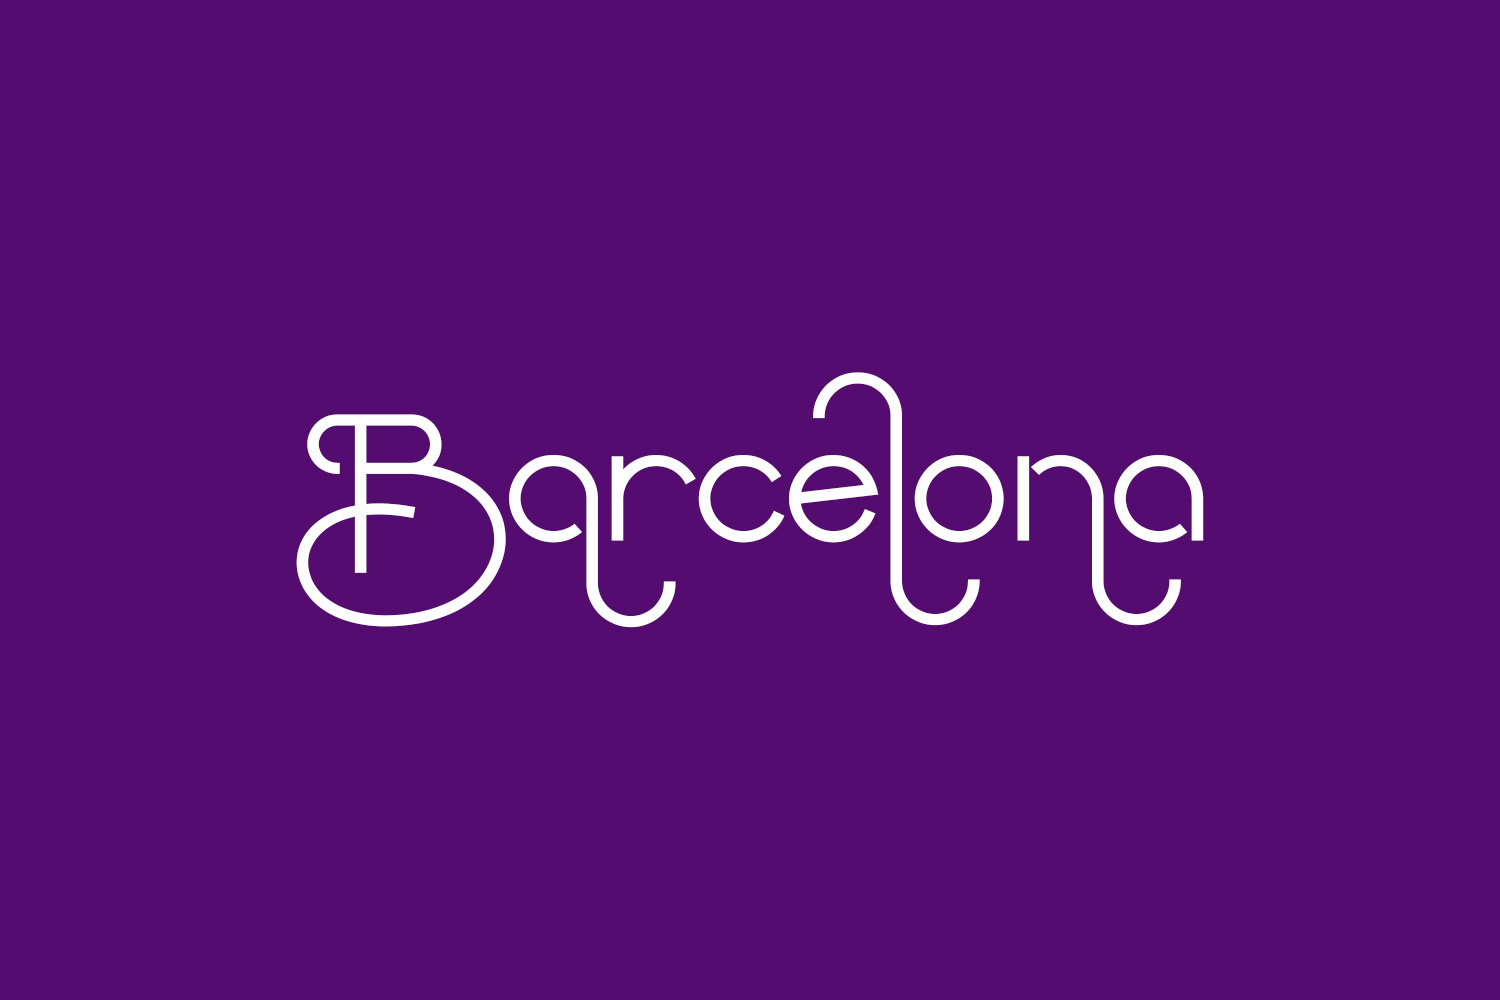 Barcelona Free Font